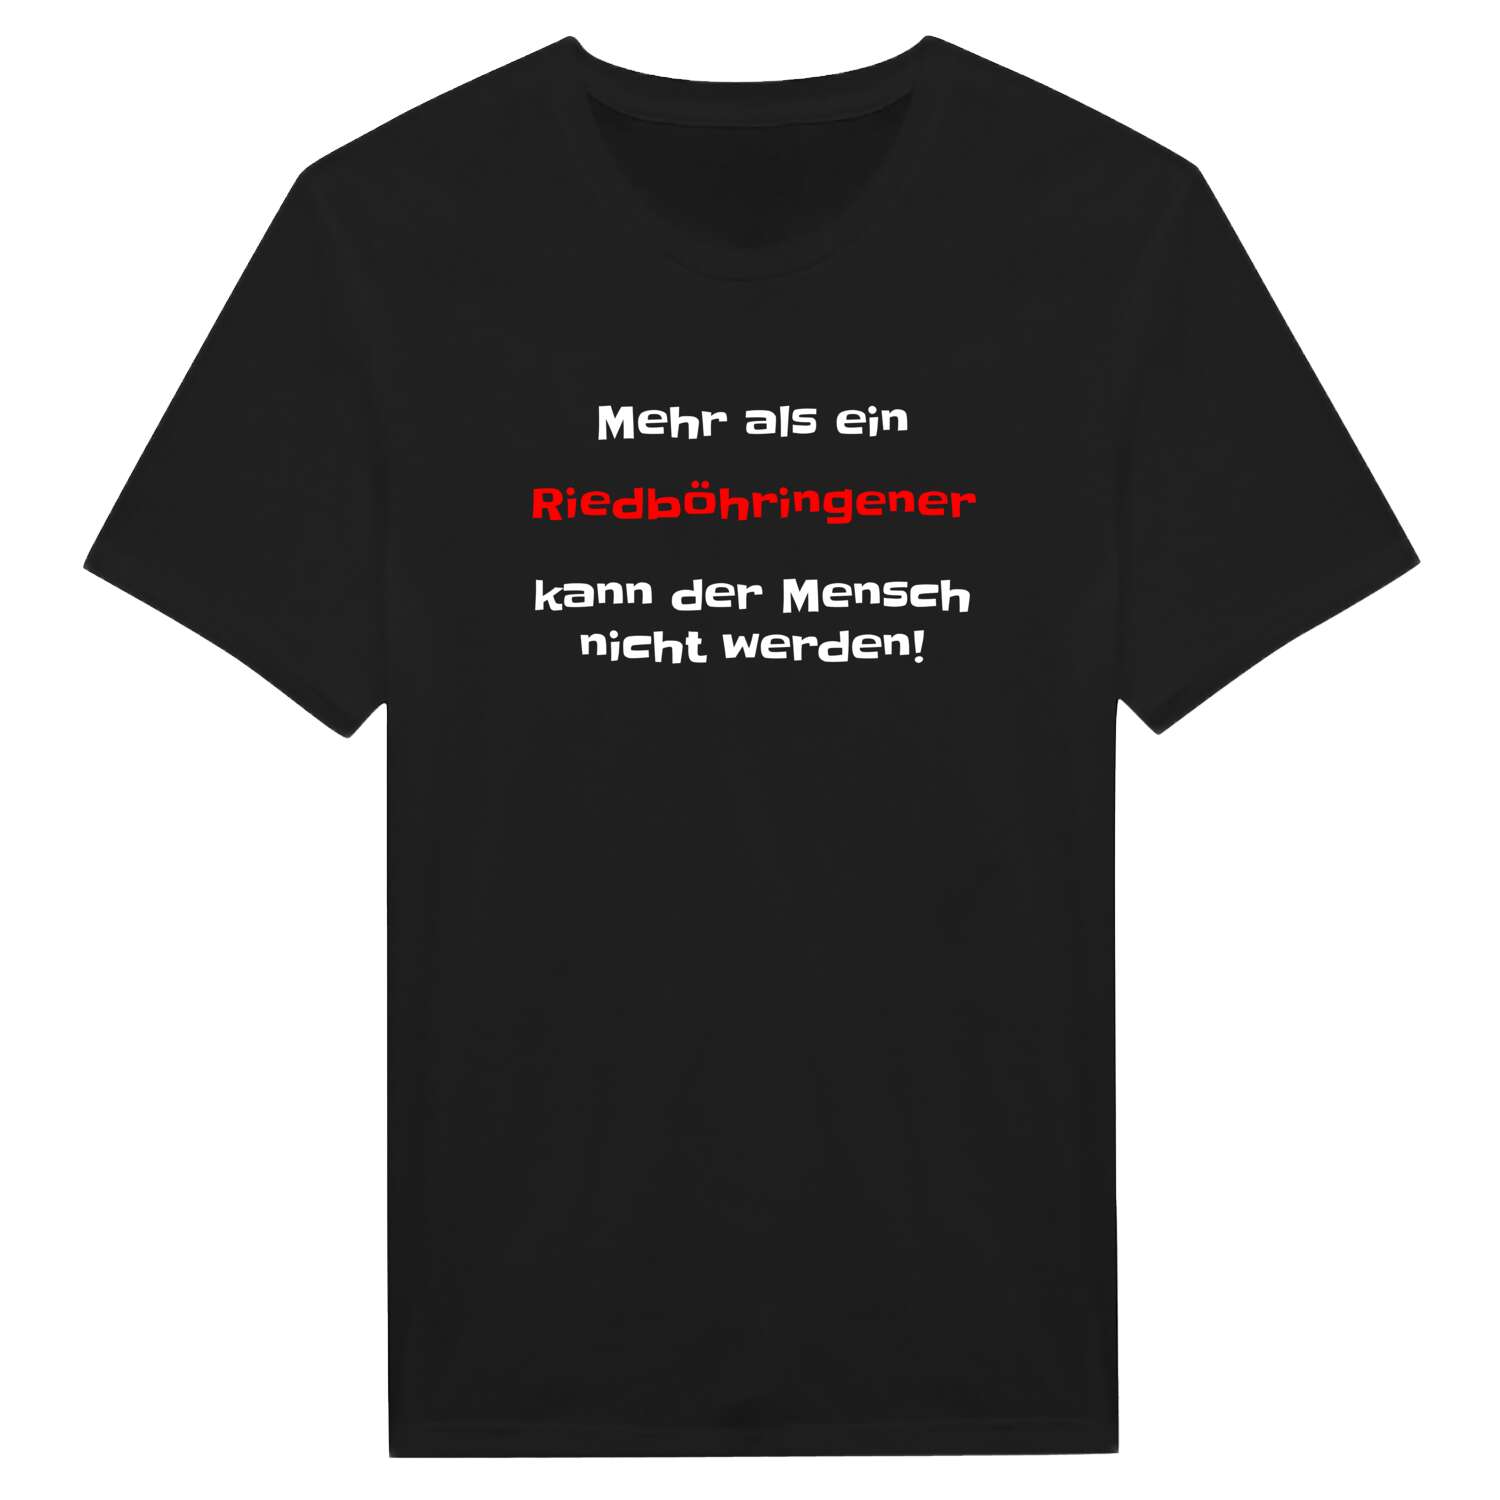 Riedböhringen T-Shirt »Mehr als ein«